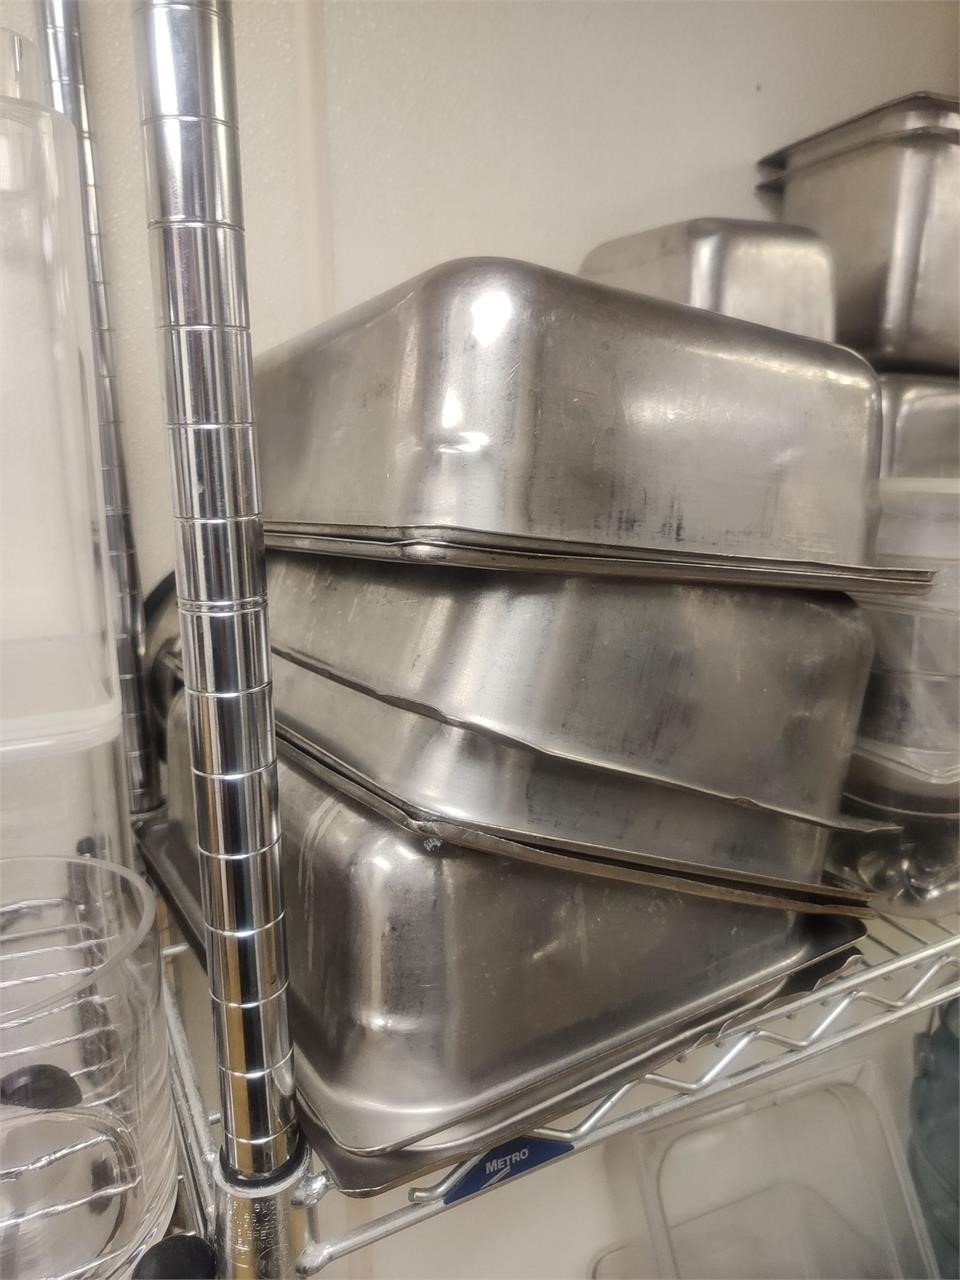 Full hotel pans